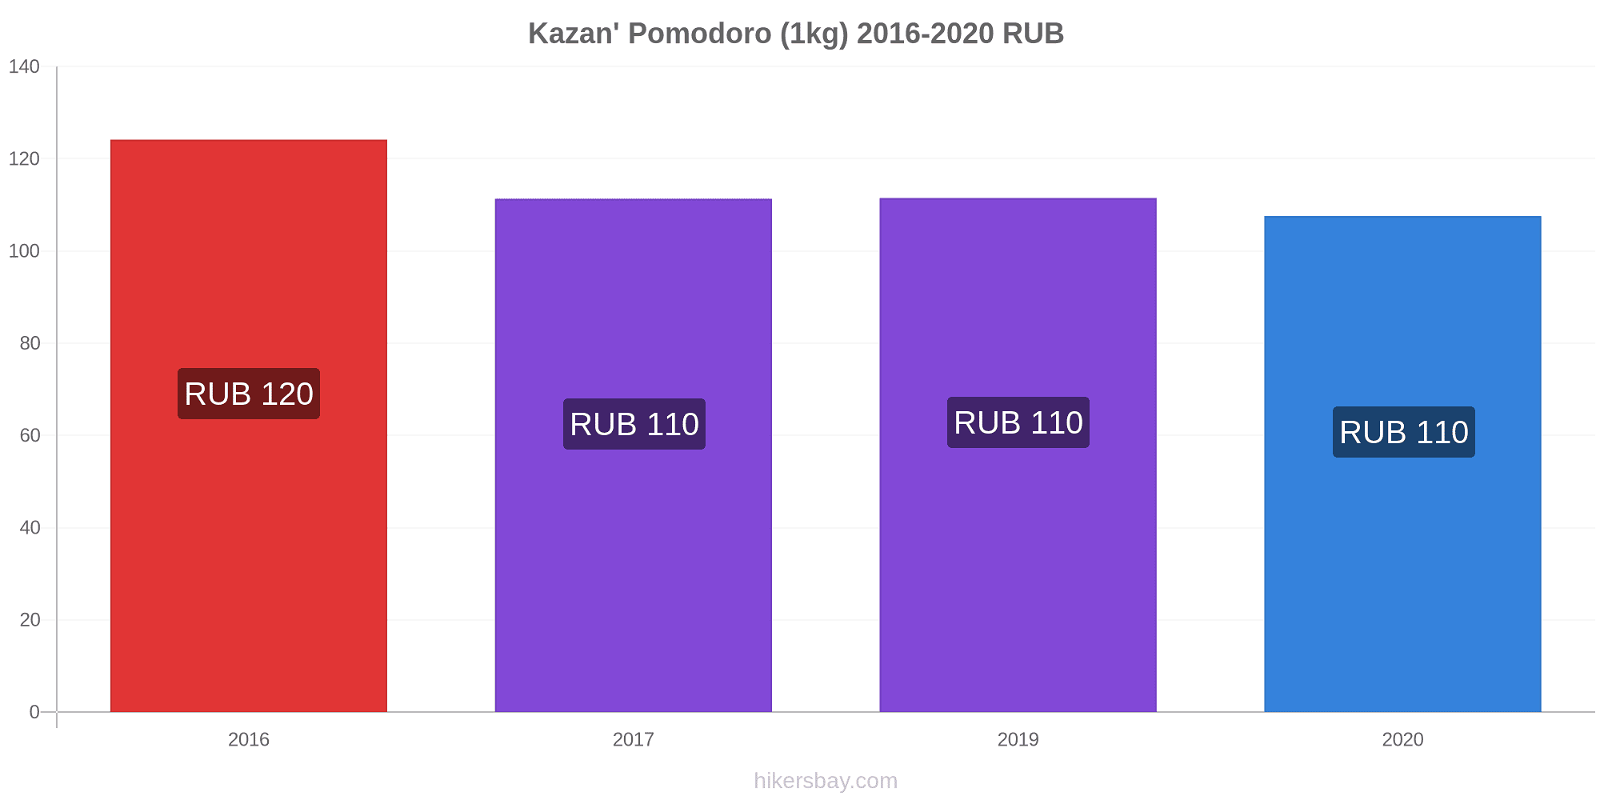 Kazan' variazioni di prezzo Pomodoro (1kg) hikersbay.com